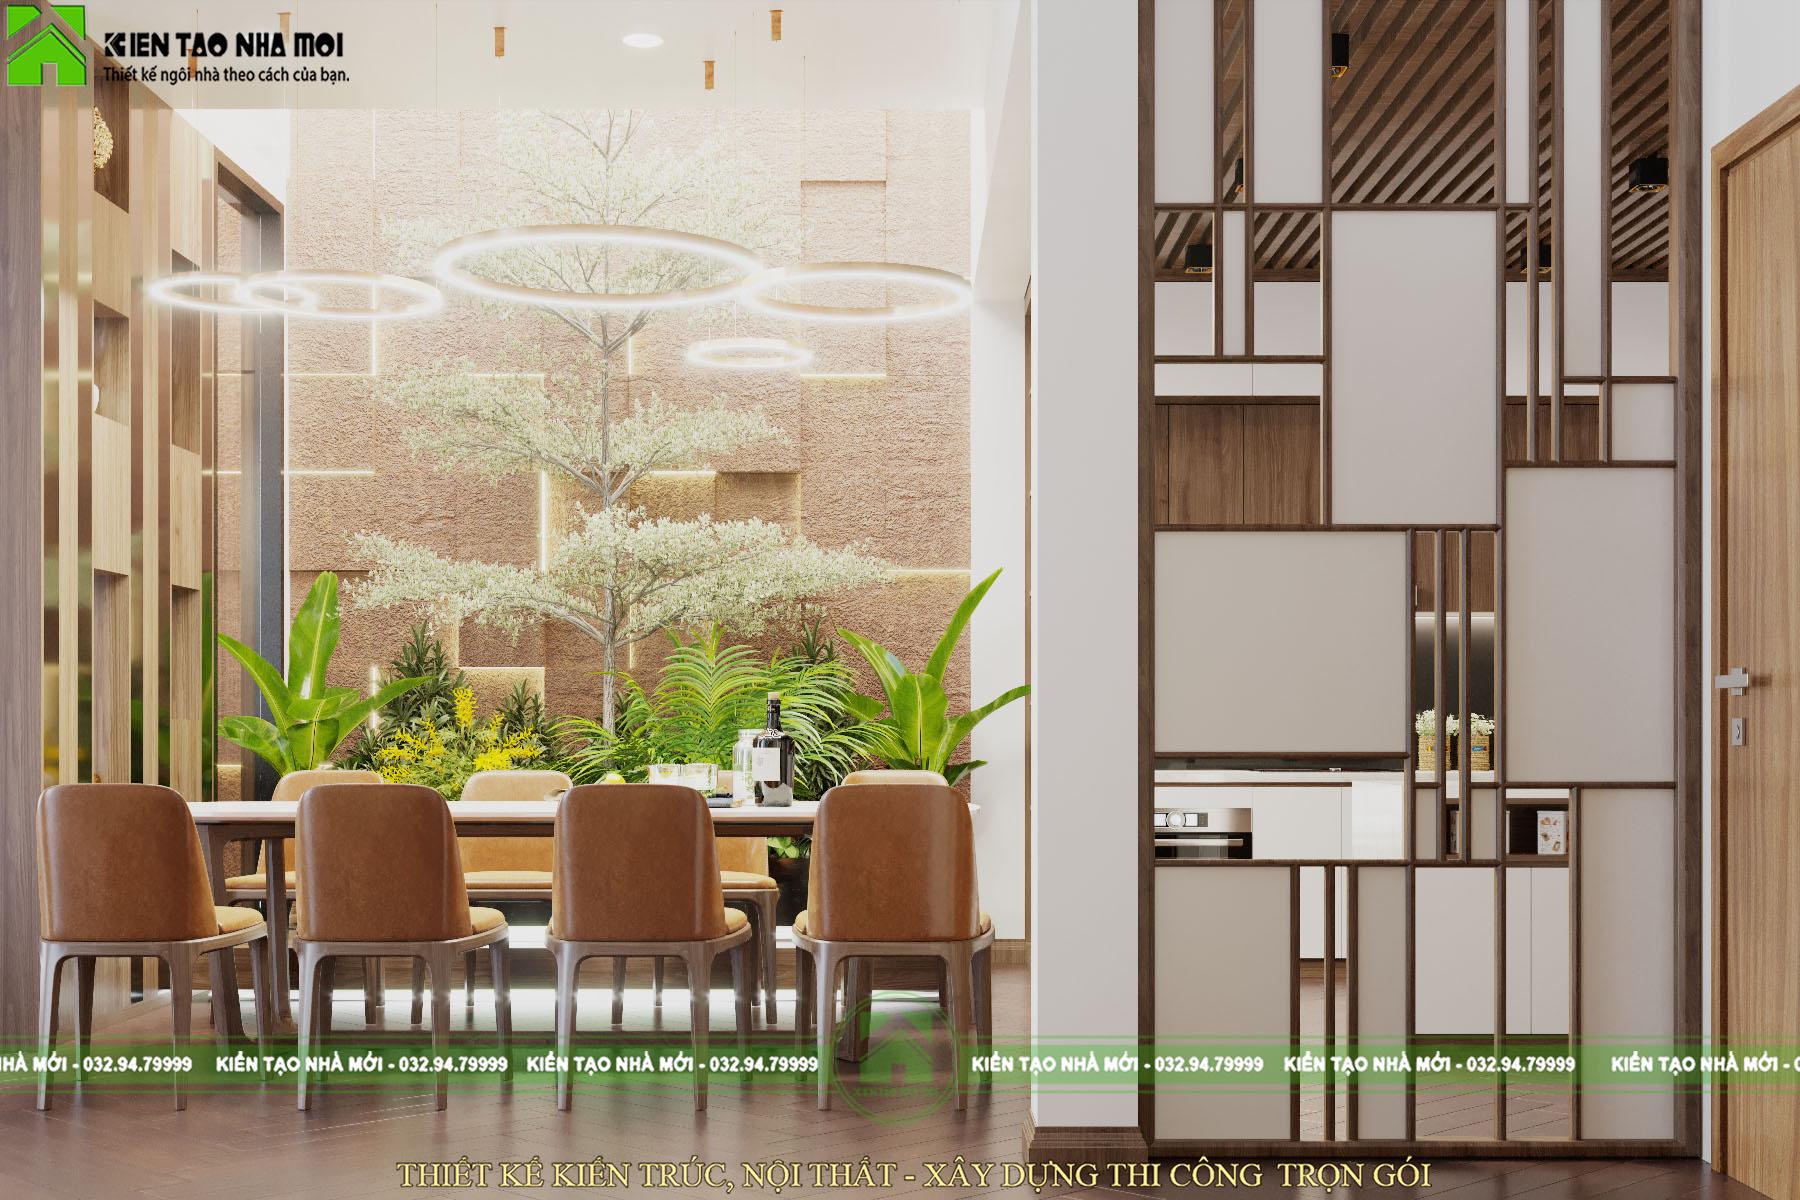 Thiết kế nội thất Biệt Thự tại Phú Thọ Thiết kế nội thất nhà ở đẹp, hiện đại tại Phú Thọ 1588576335 5